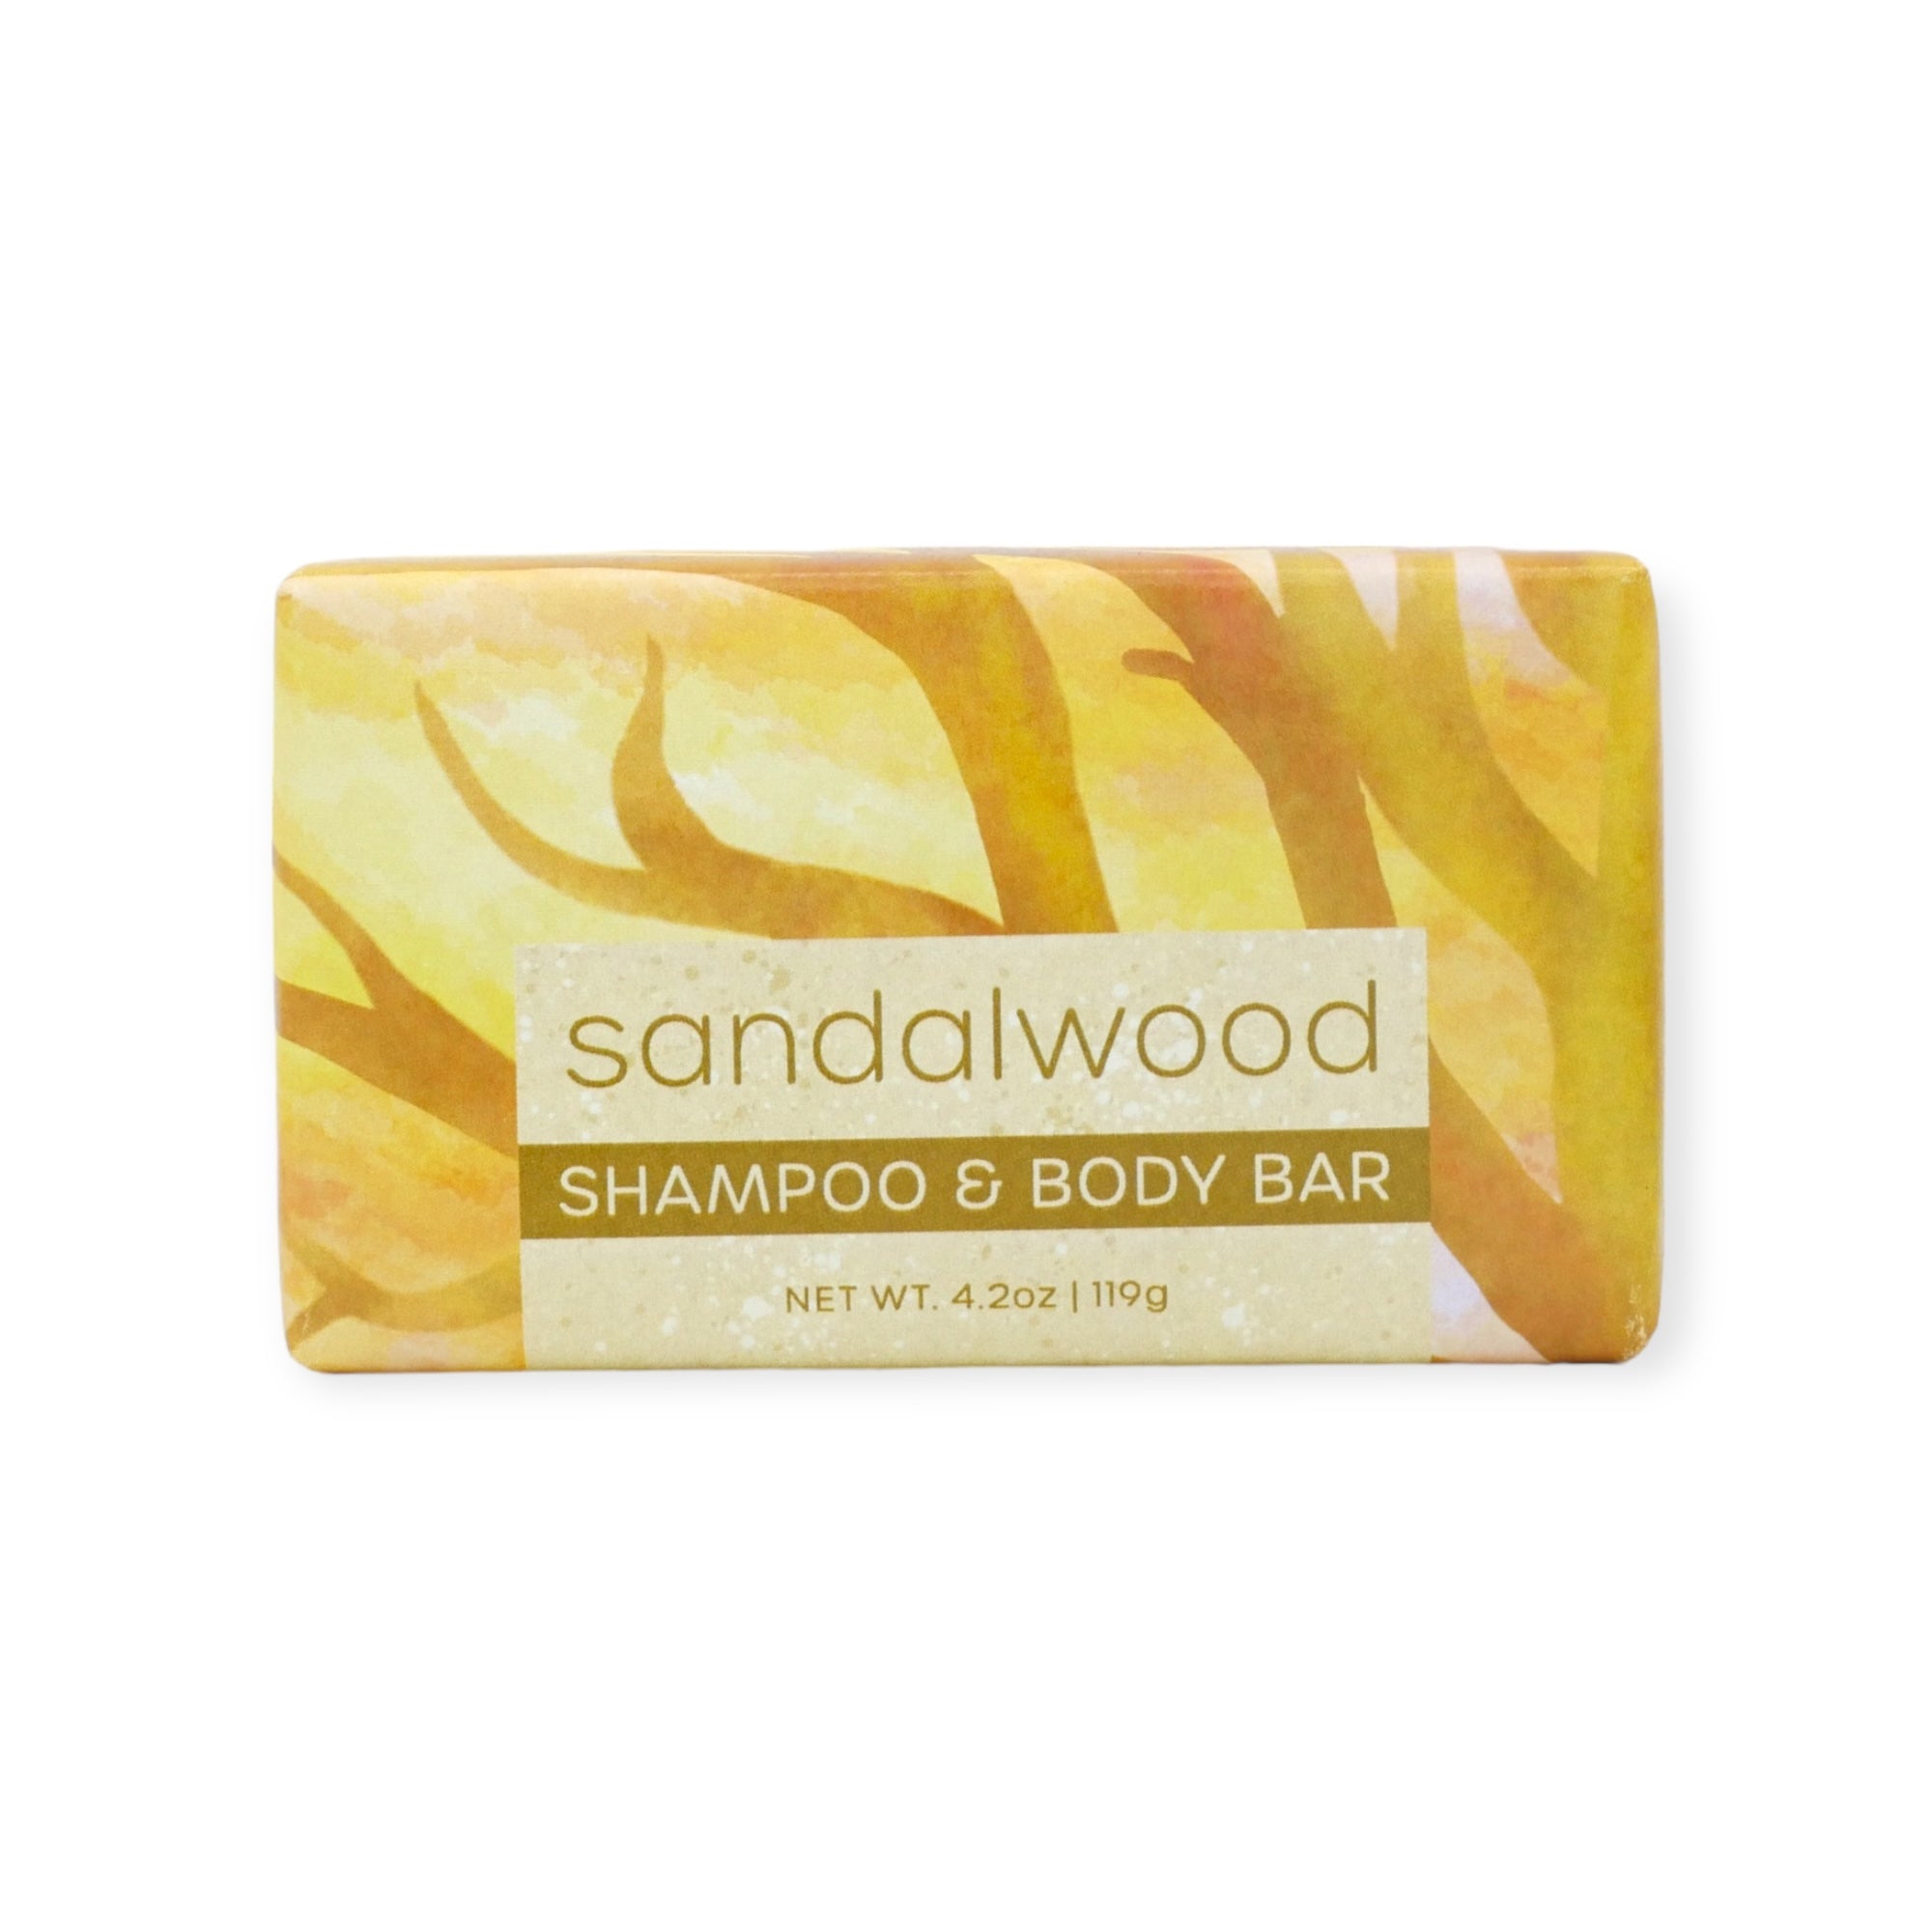 Sandalwood Shampoo & Body Bar by Greenwich Bay Trading Co.